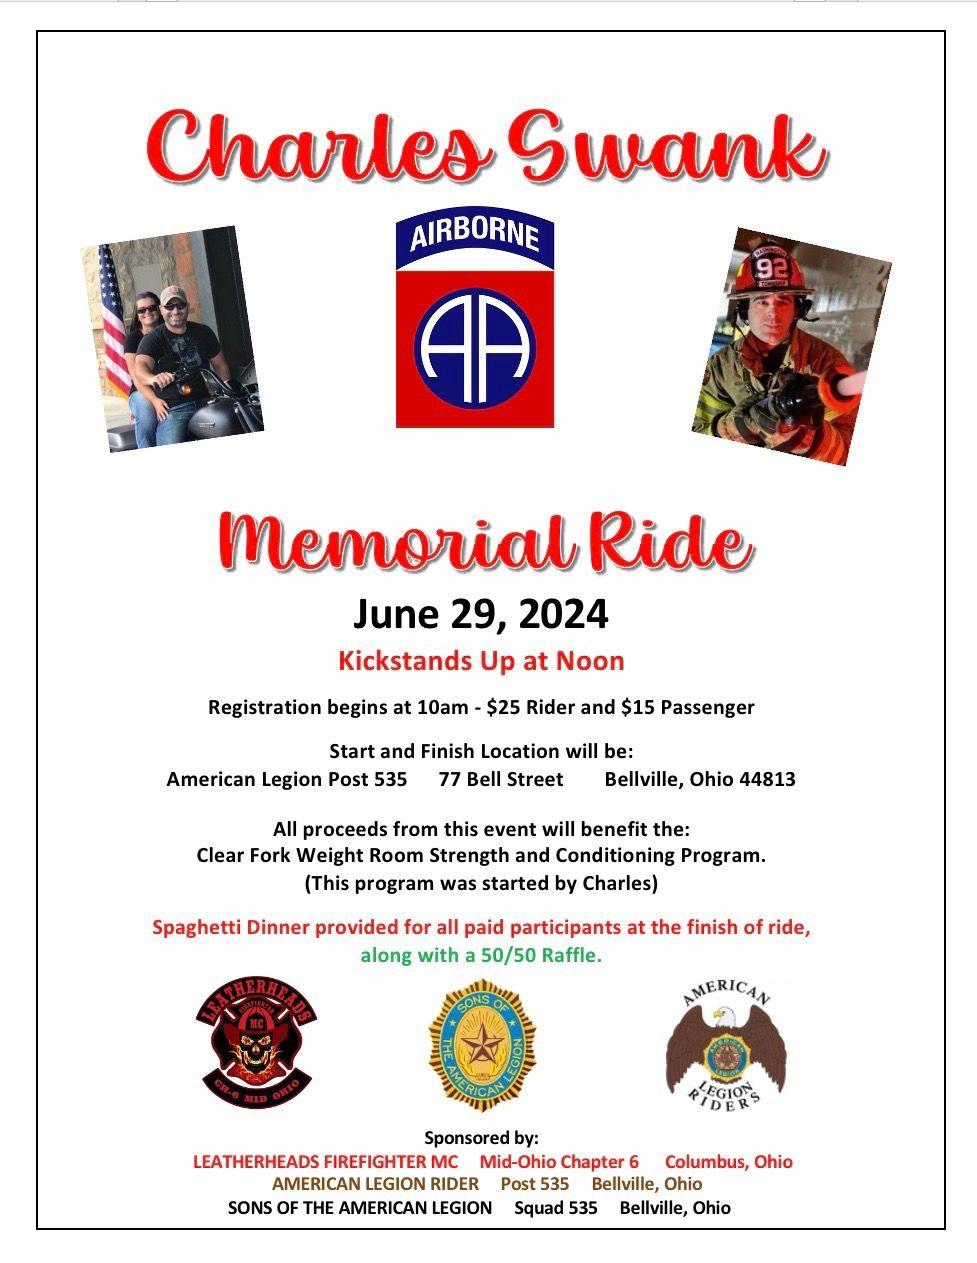 Charles Swank Memorial Ride